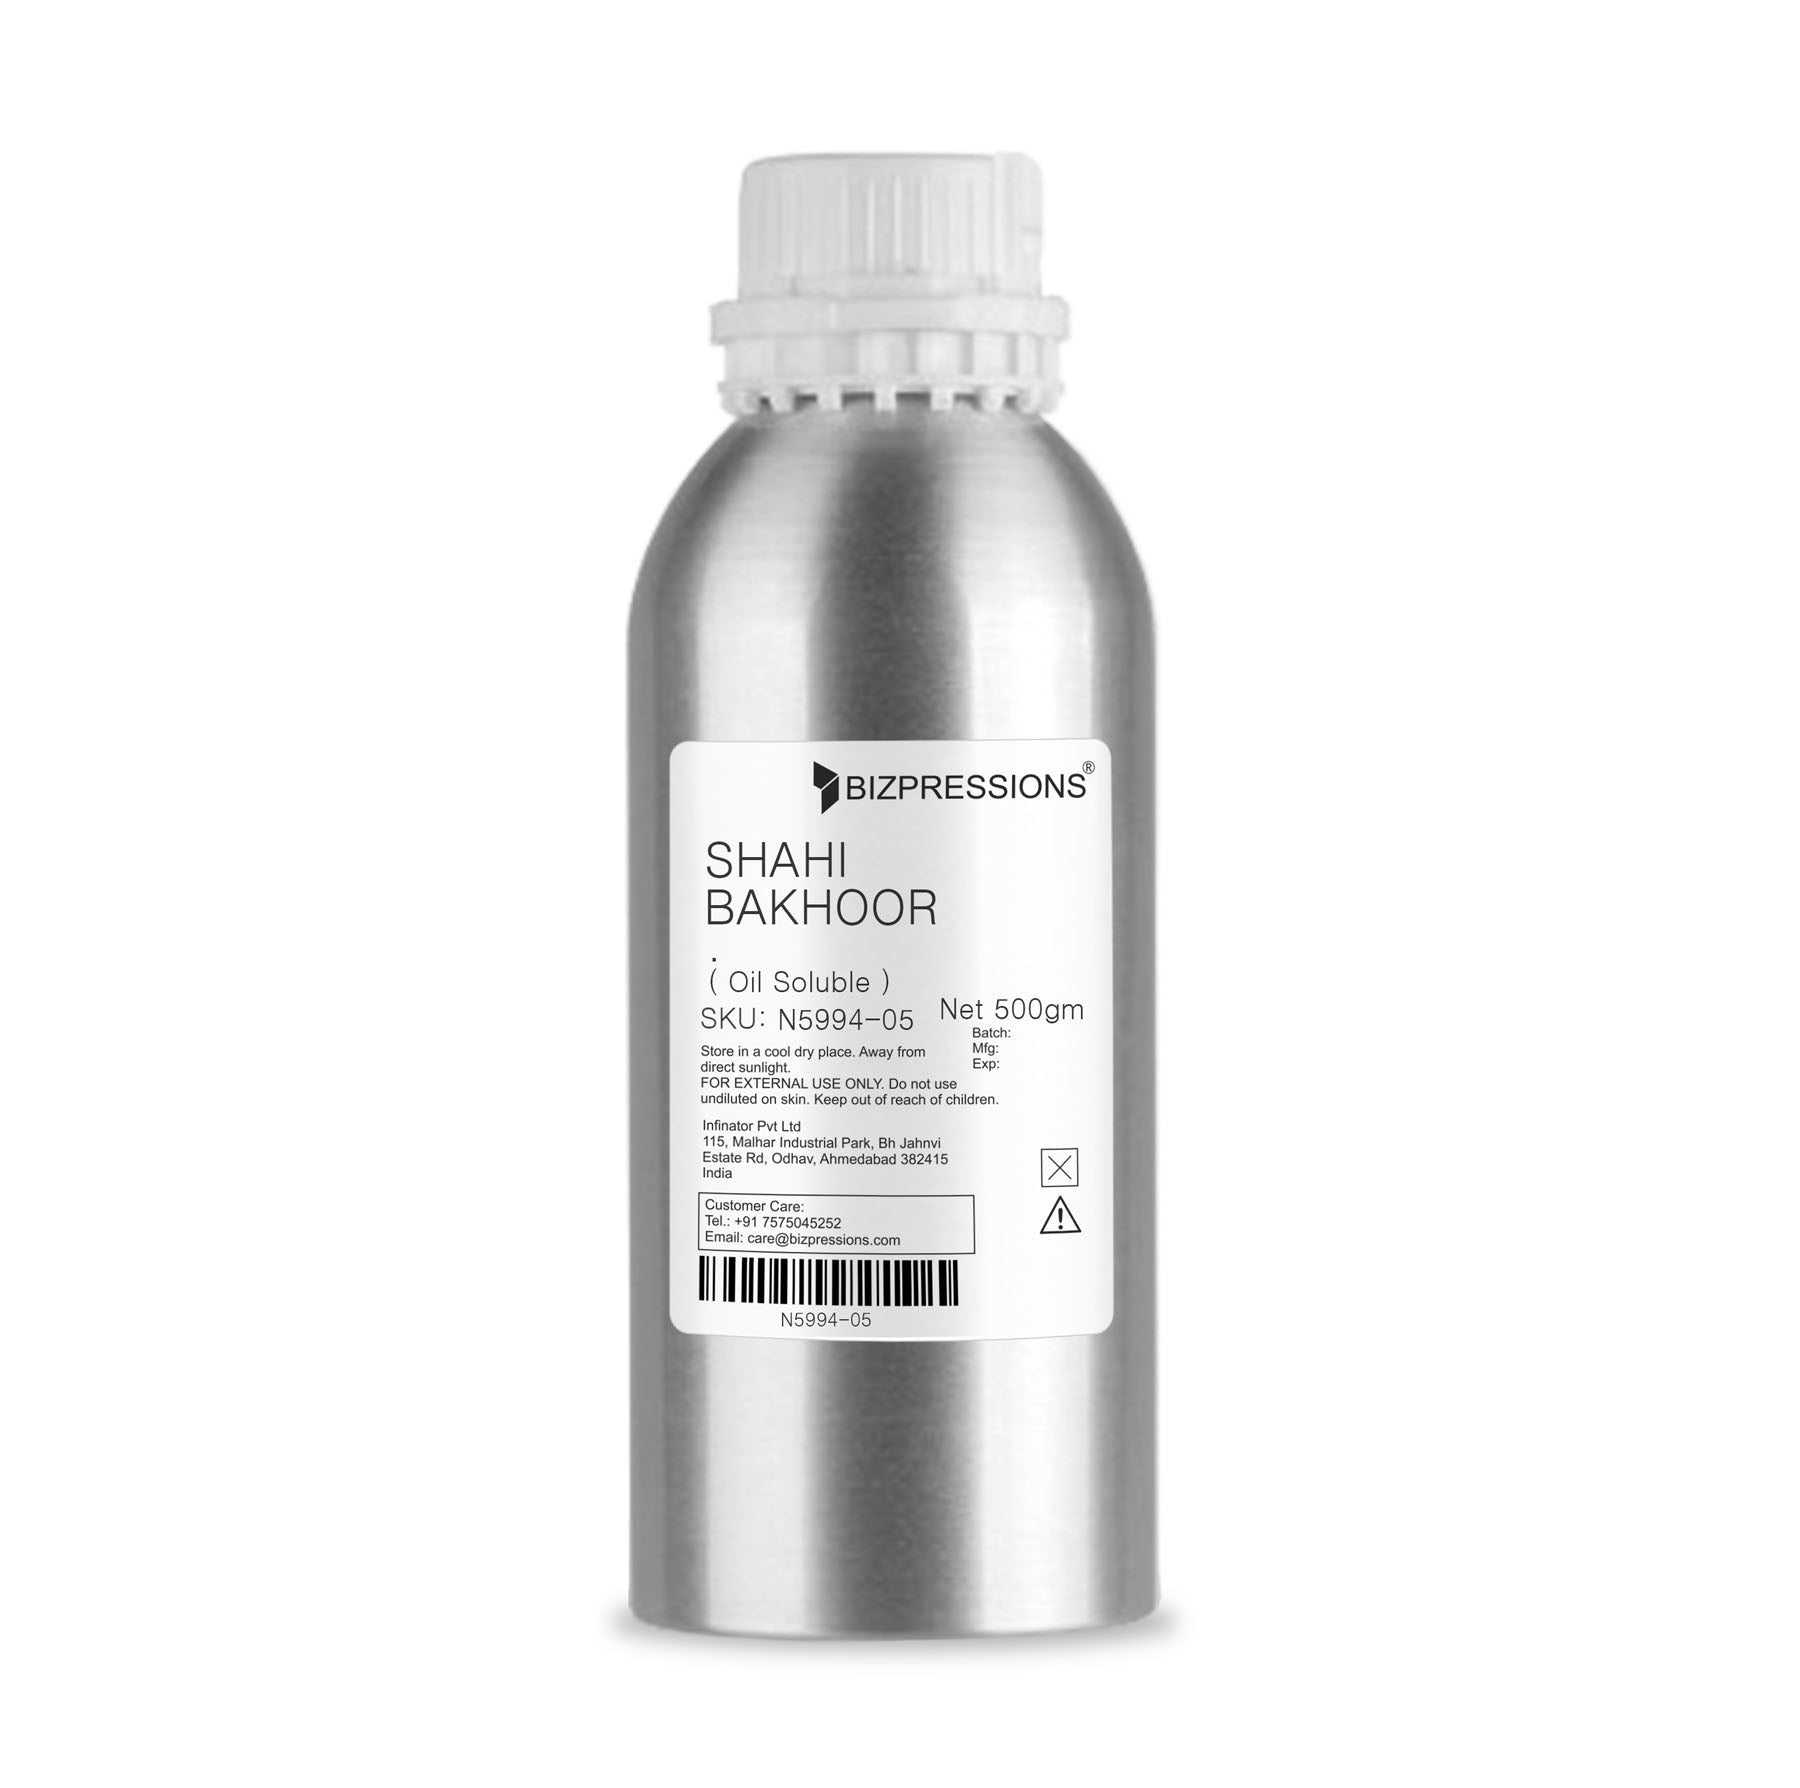 SHAHI BAKHOOR - Fragrance ( Oil Soluble ) - 500 gm